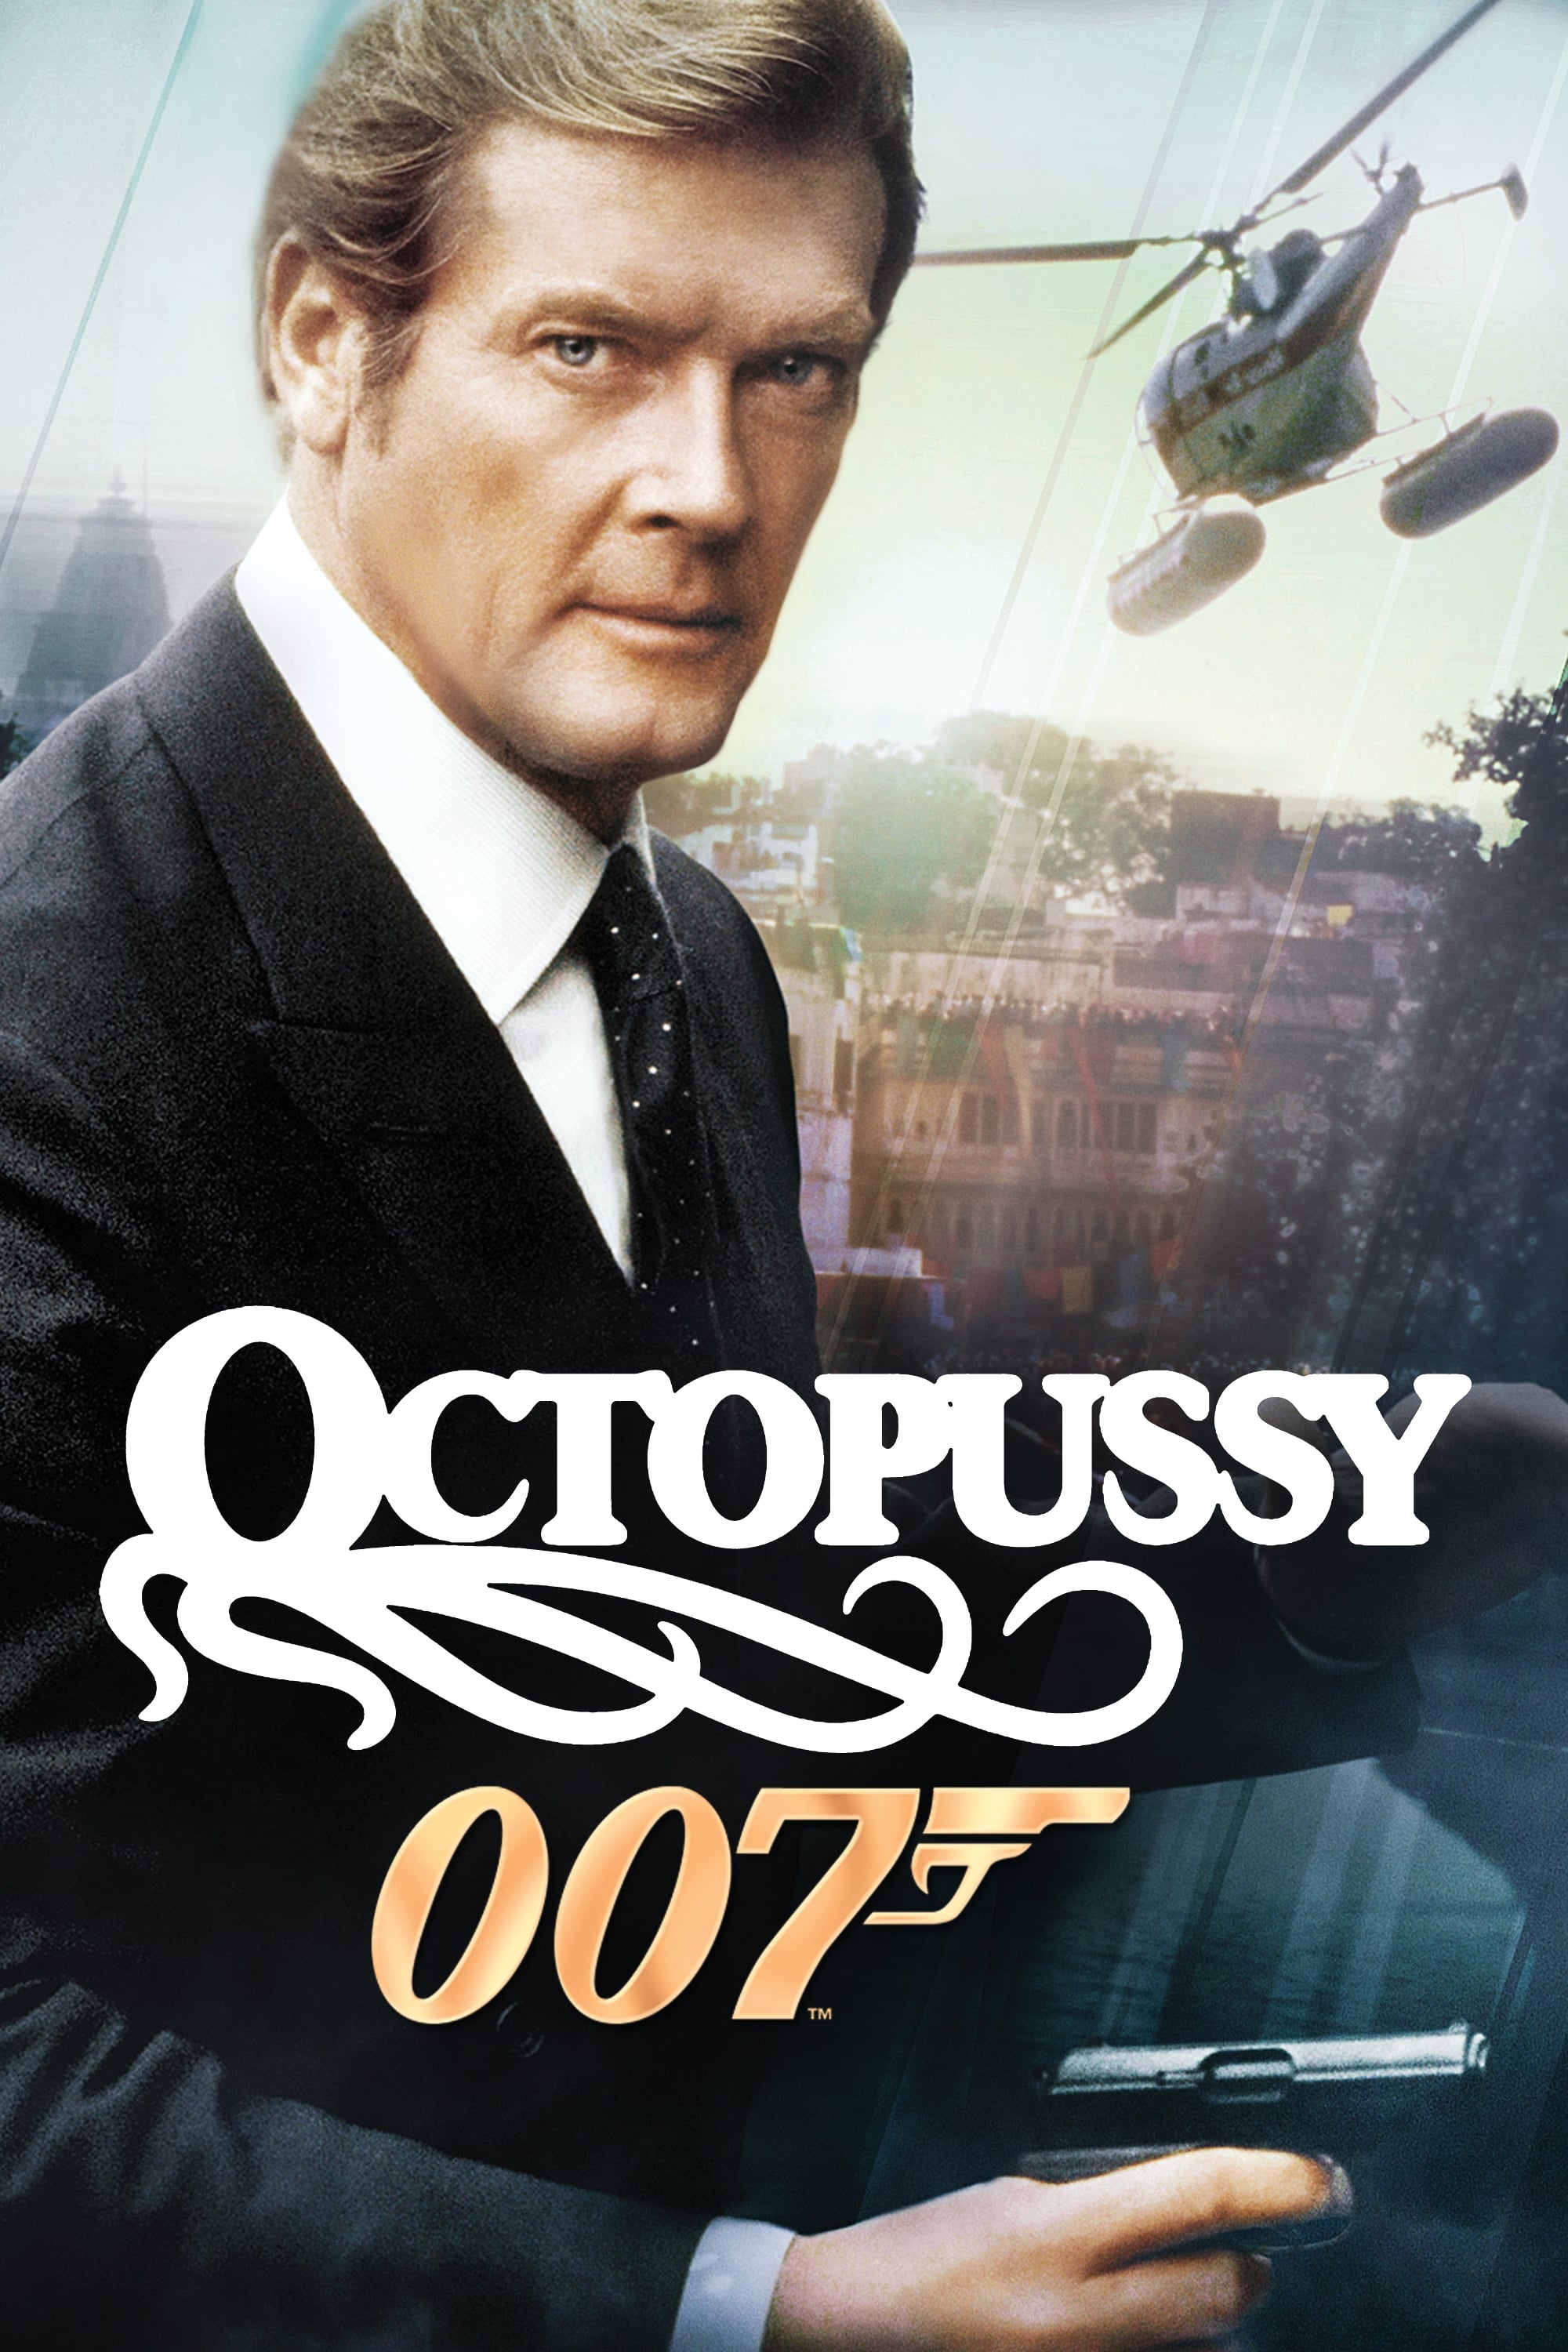 007 Octopussy Contra Las Chicas Mortales